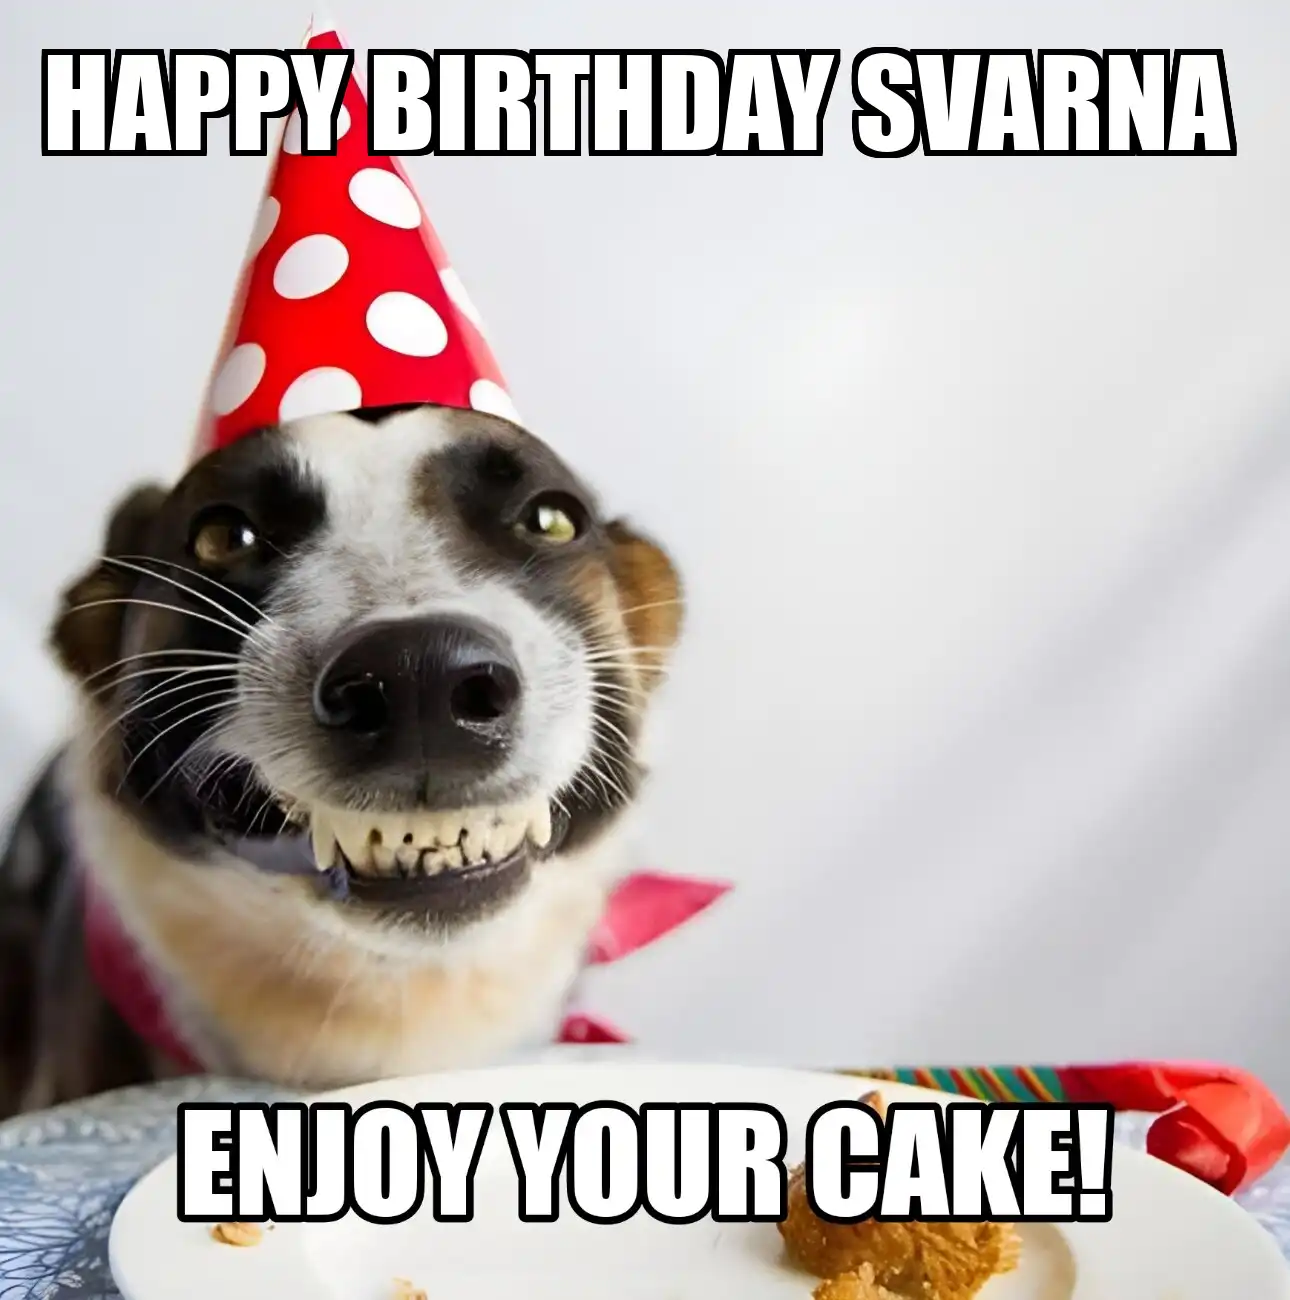 Happy Birthday Svarna Enjoy Your Cake Dog Meme